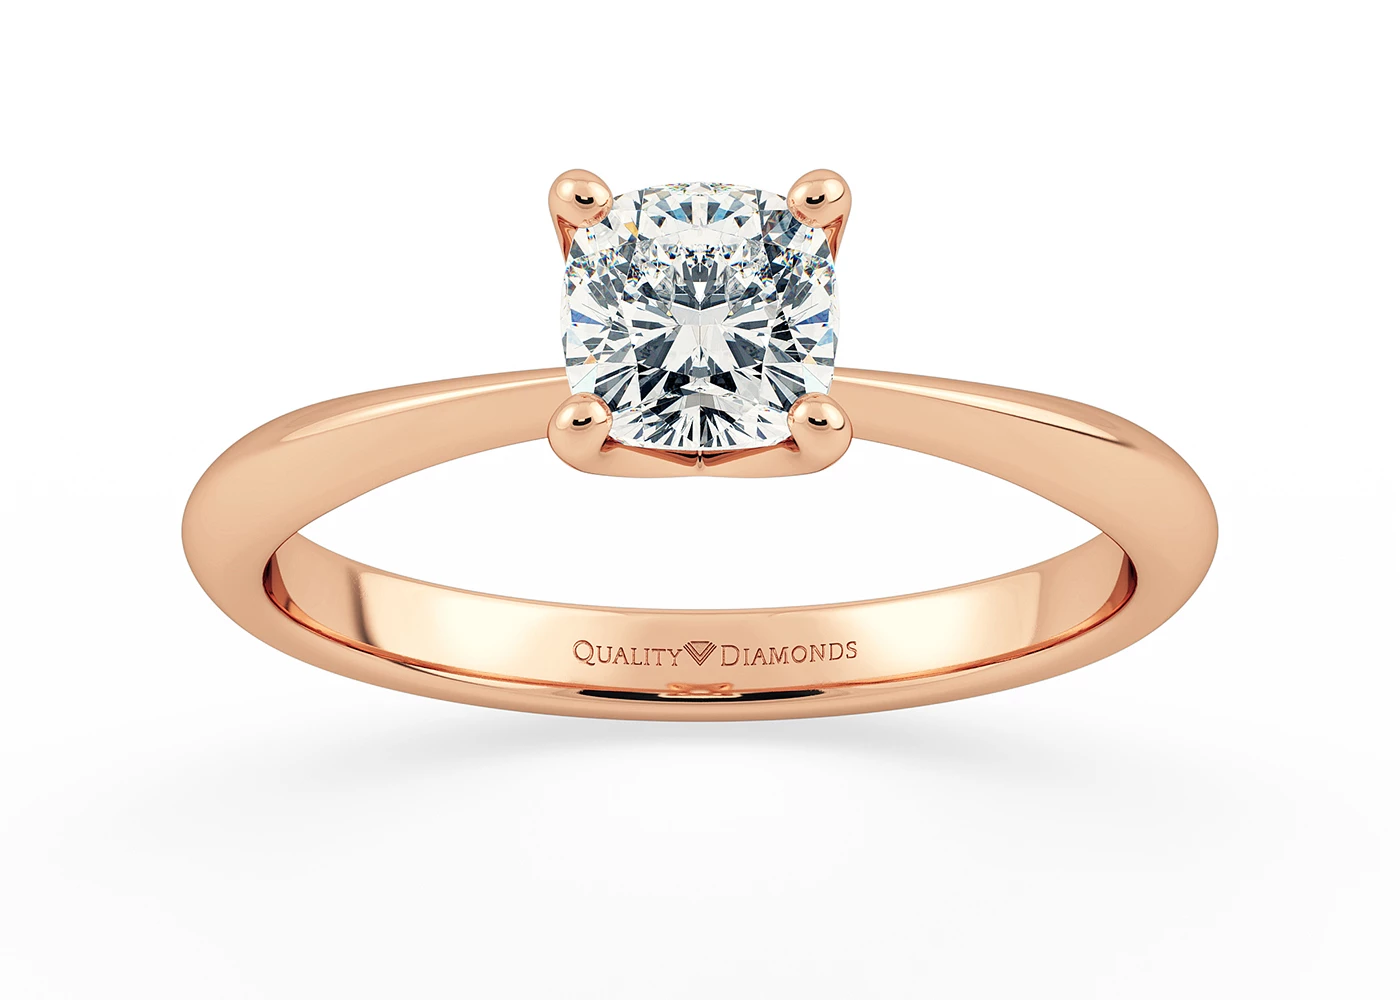 Cushion Amorette Diamond Ring in 9K Rose Gold